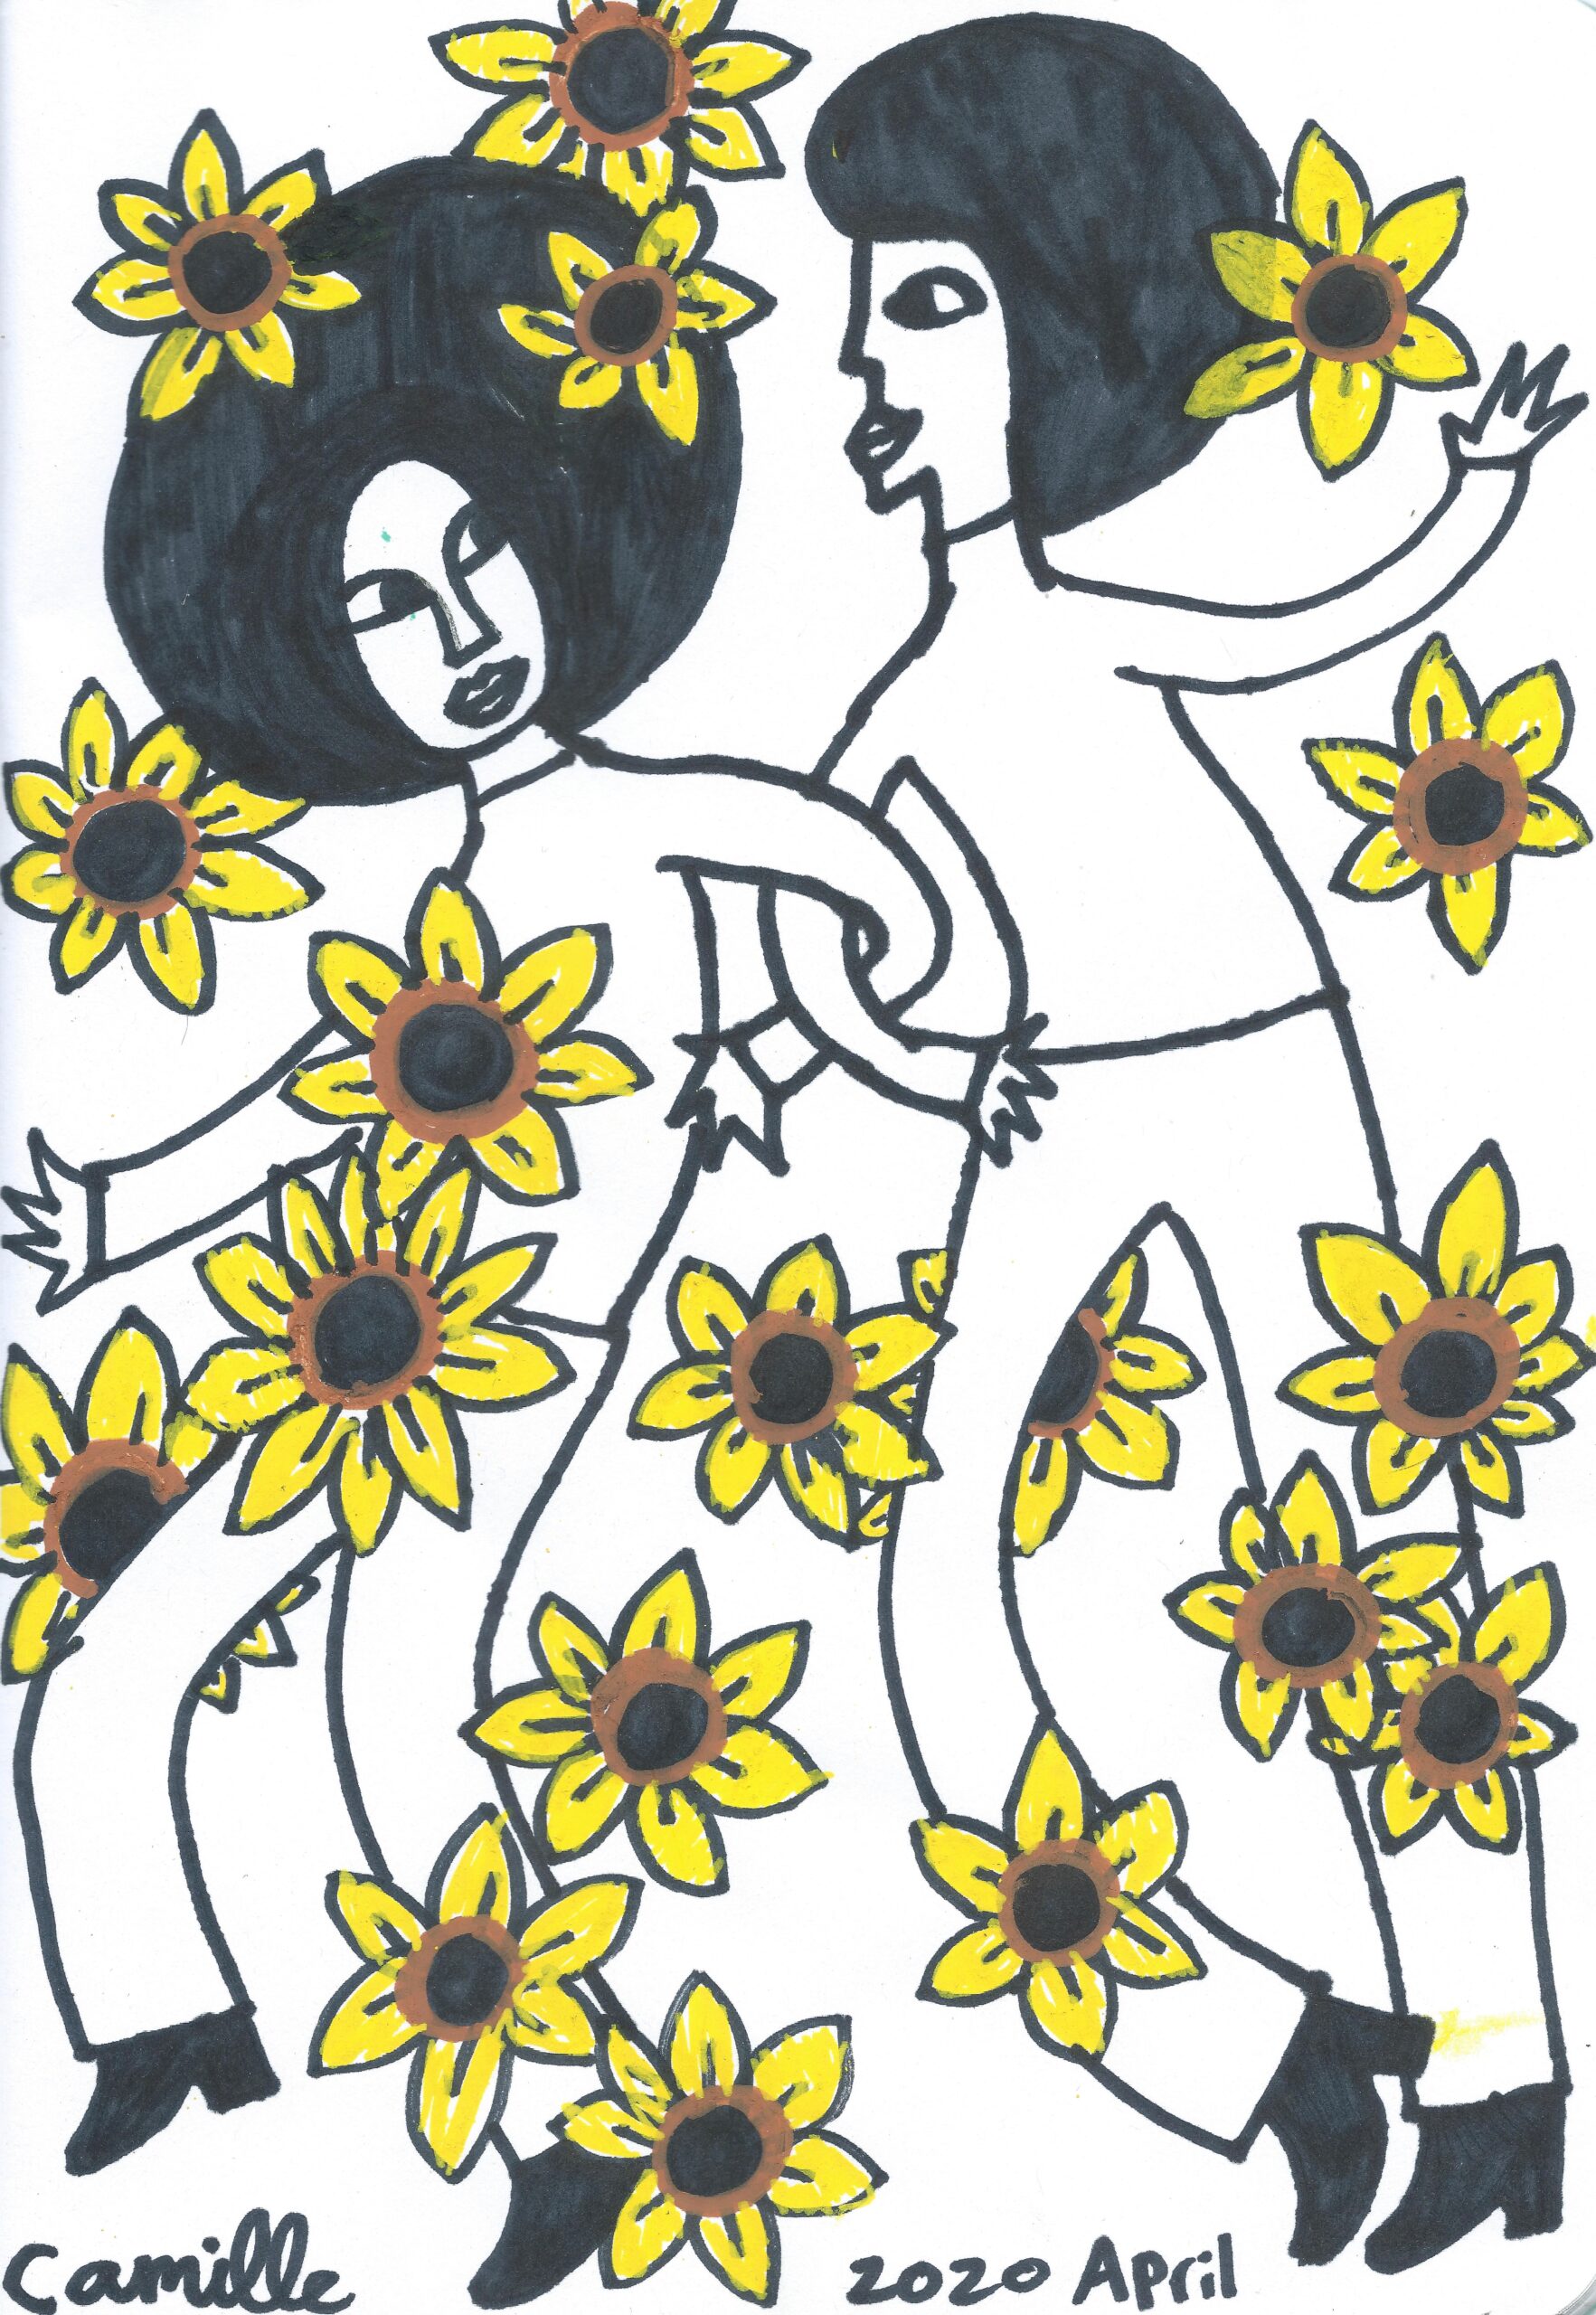 @ 2020, Camille Phoenix, Sunflower Series